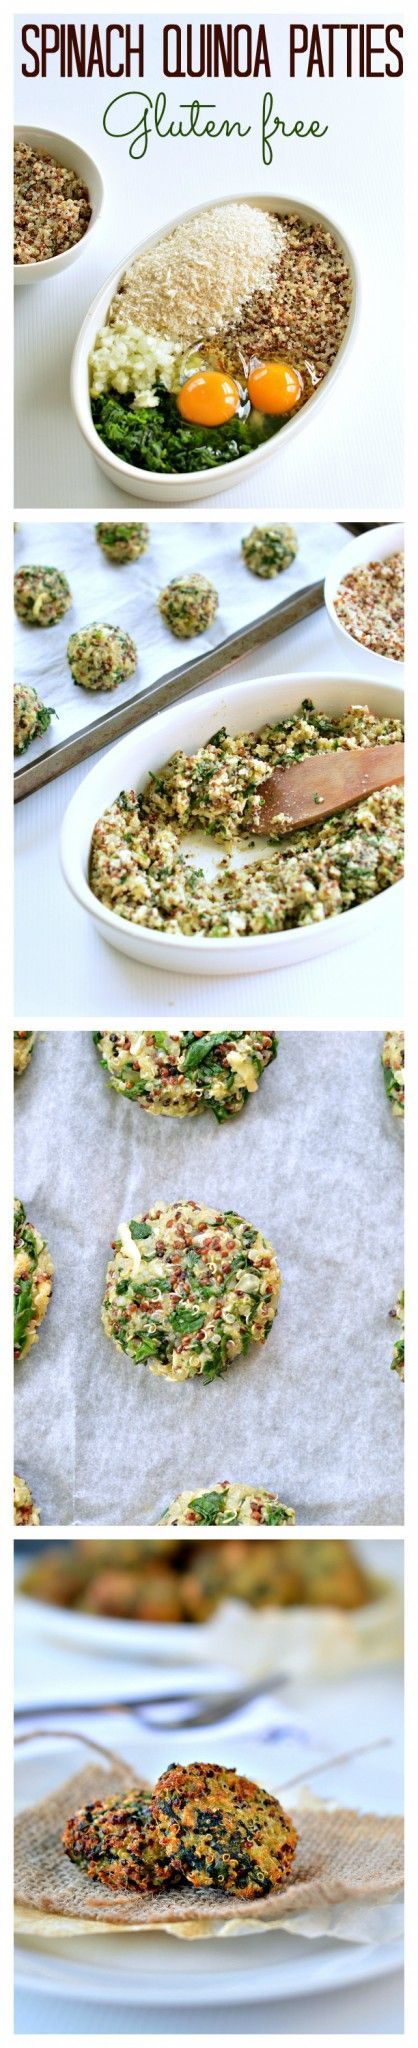 spinach quinoa patty